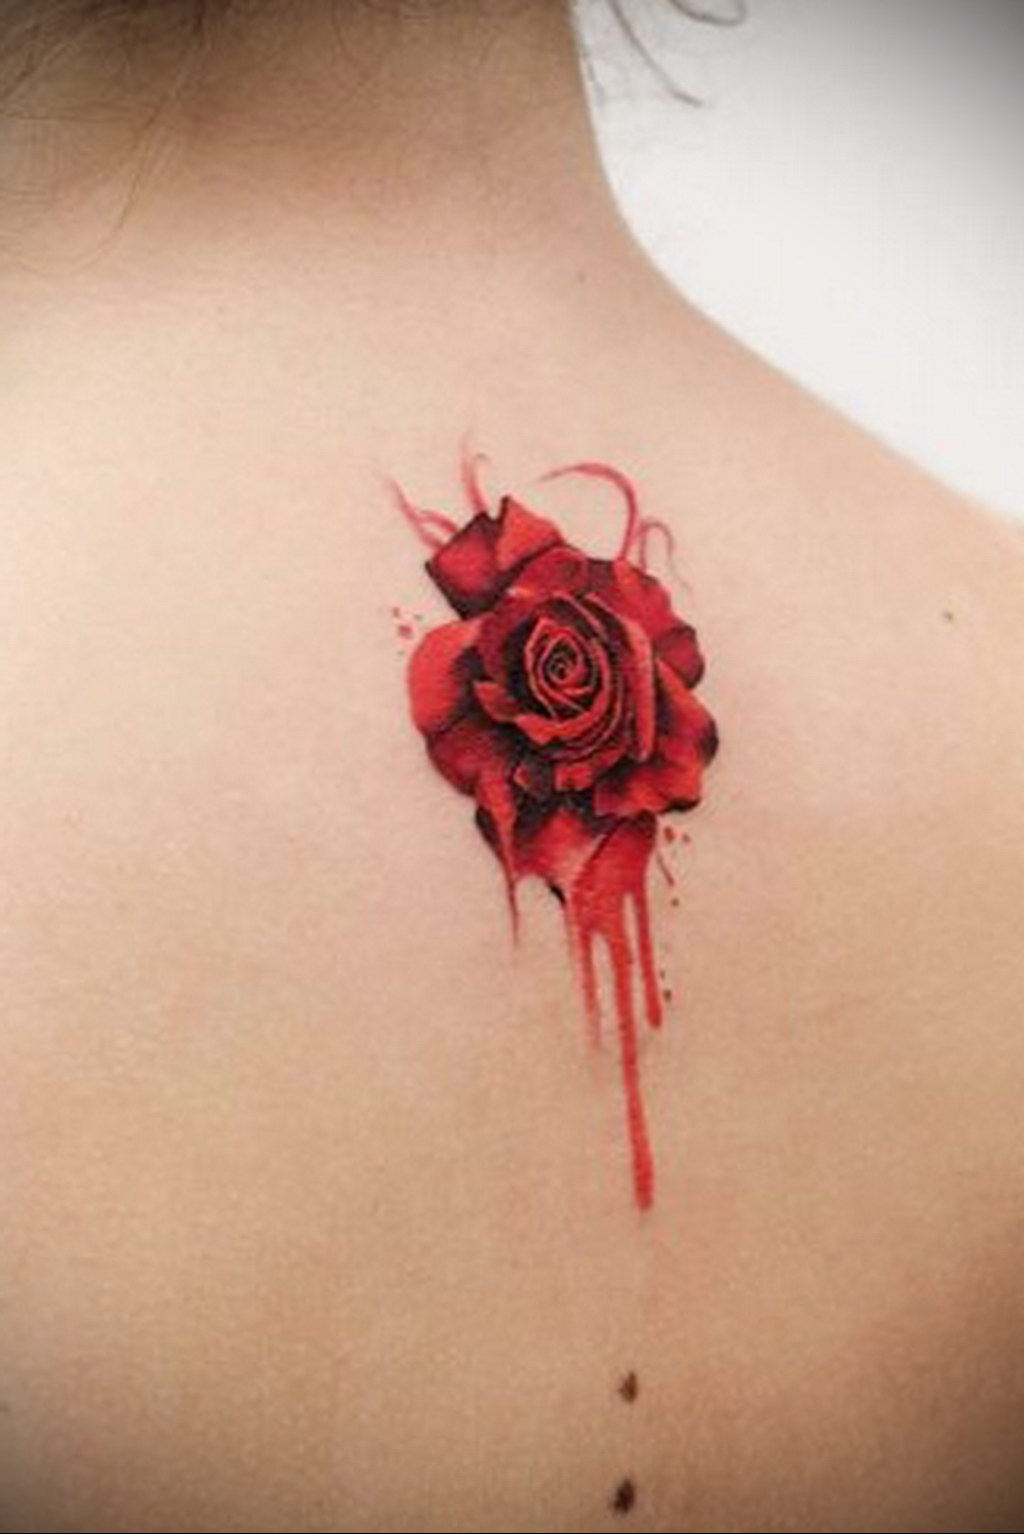 Photo blood rose tattoo 22102019 009  blood rose tattoo   tattoovaluenet  tattoovaluenet